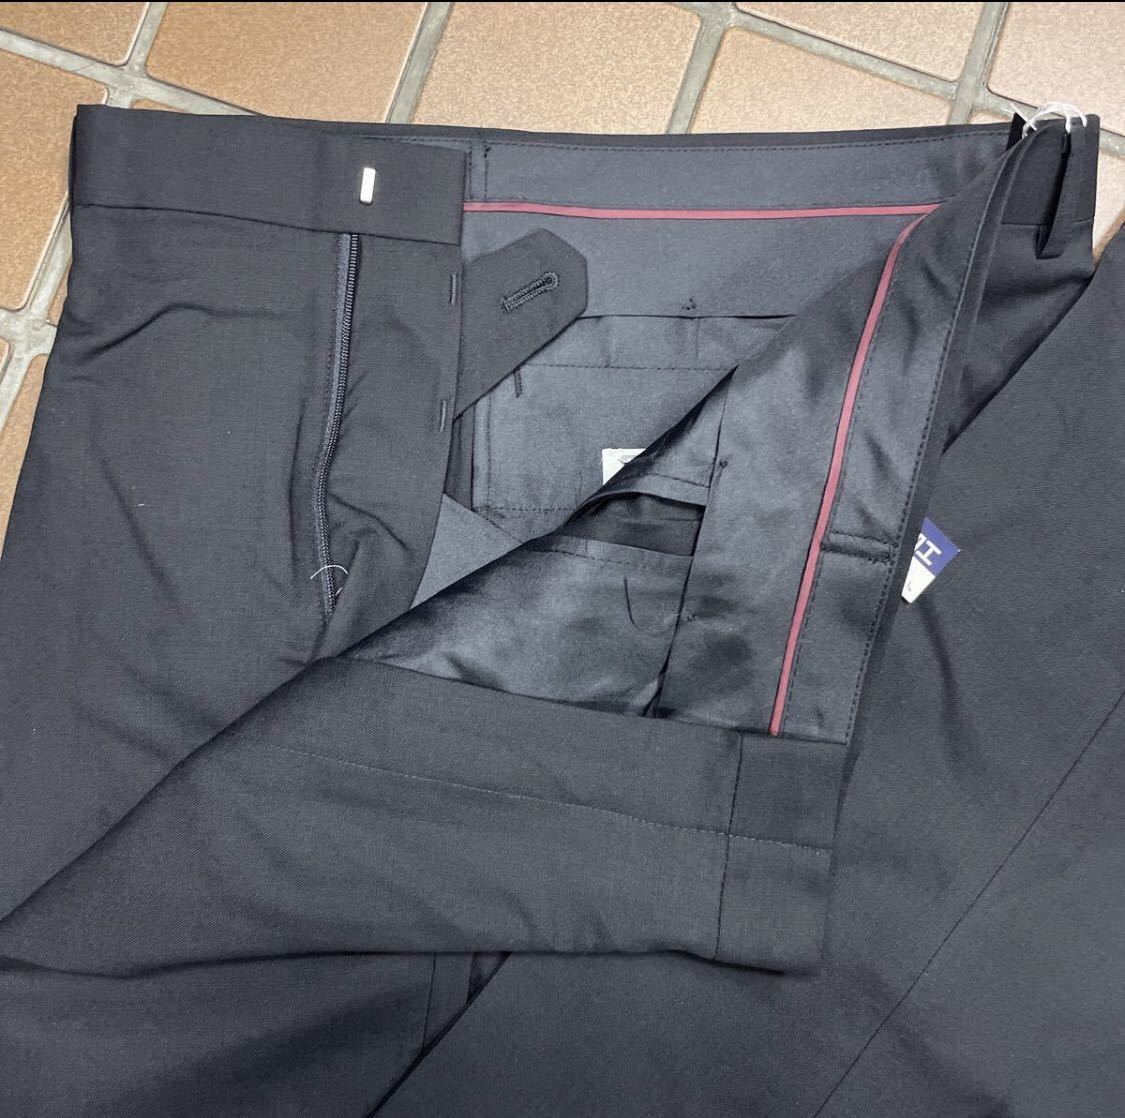 [ новый товар ] Kanebo двубортный костюм траурный костюм . одежда / размер M AB4/ черный чёрный /no- Ben / праздничные обряды регулировщик плиссировать обработка 